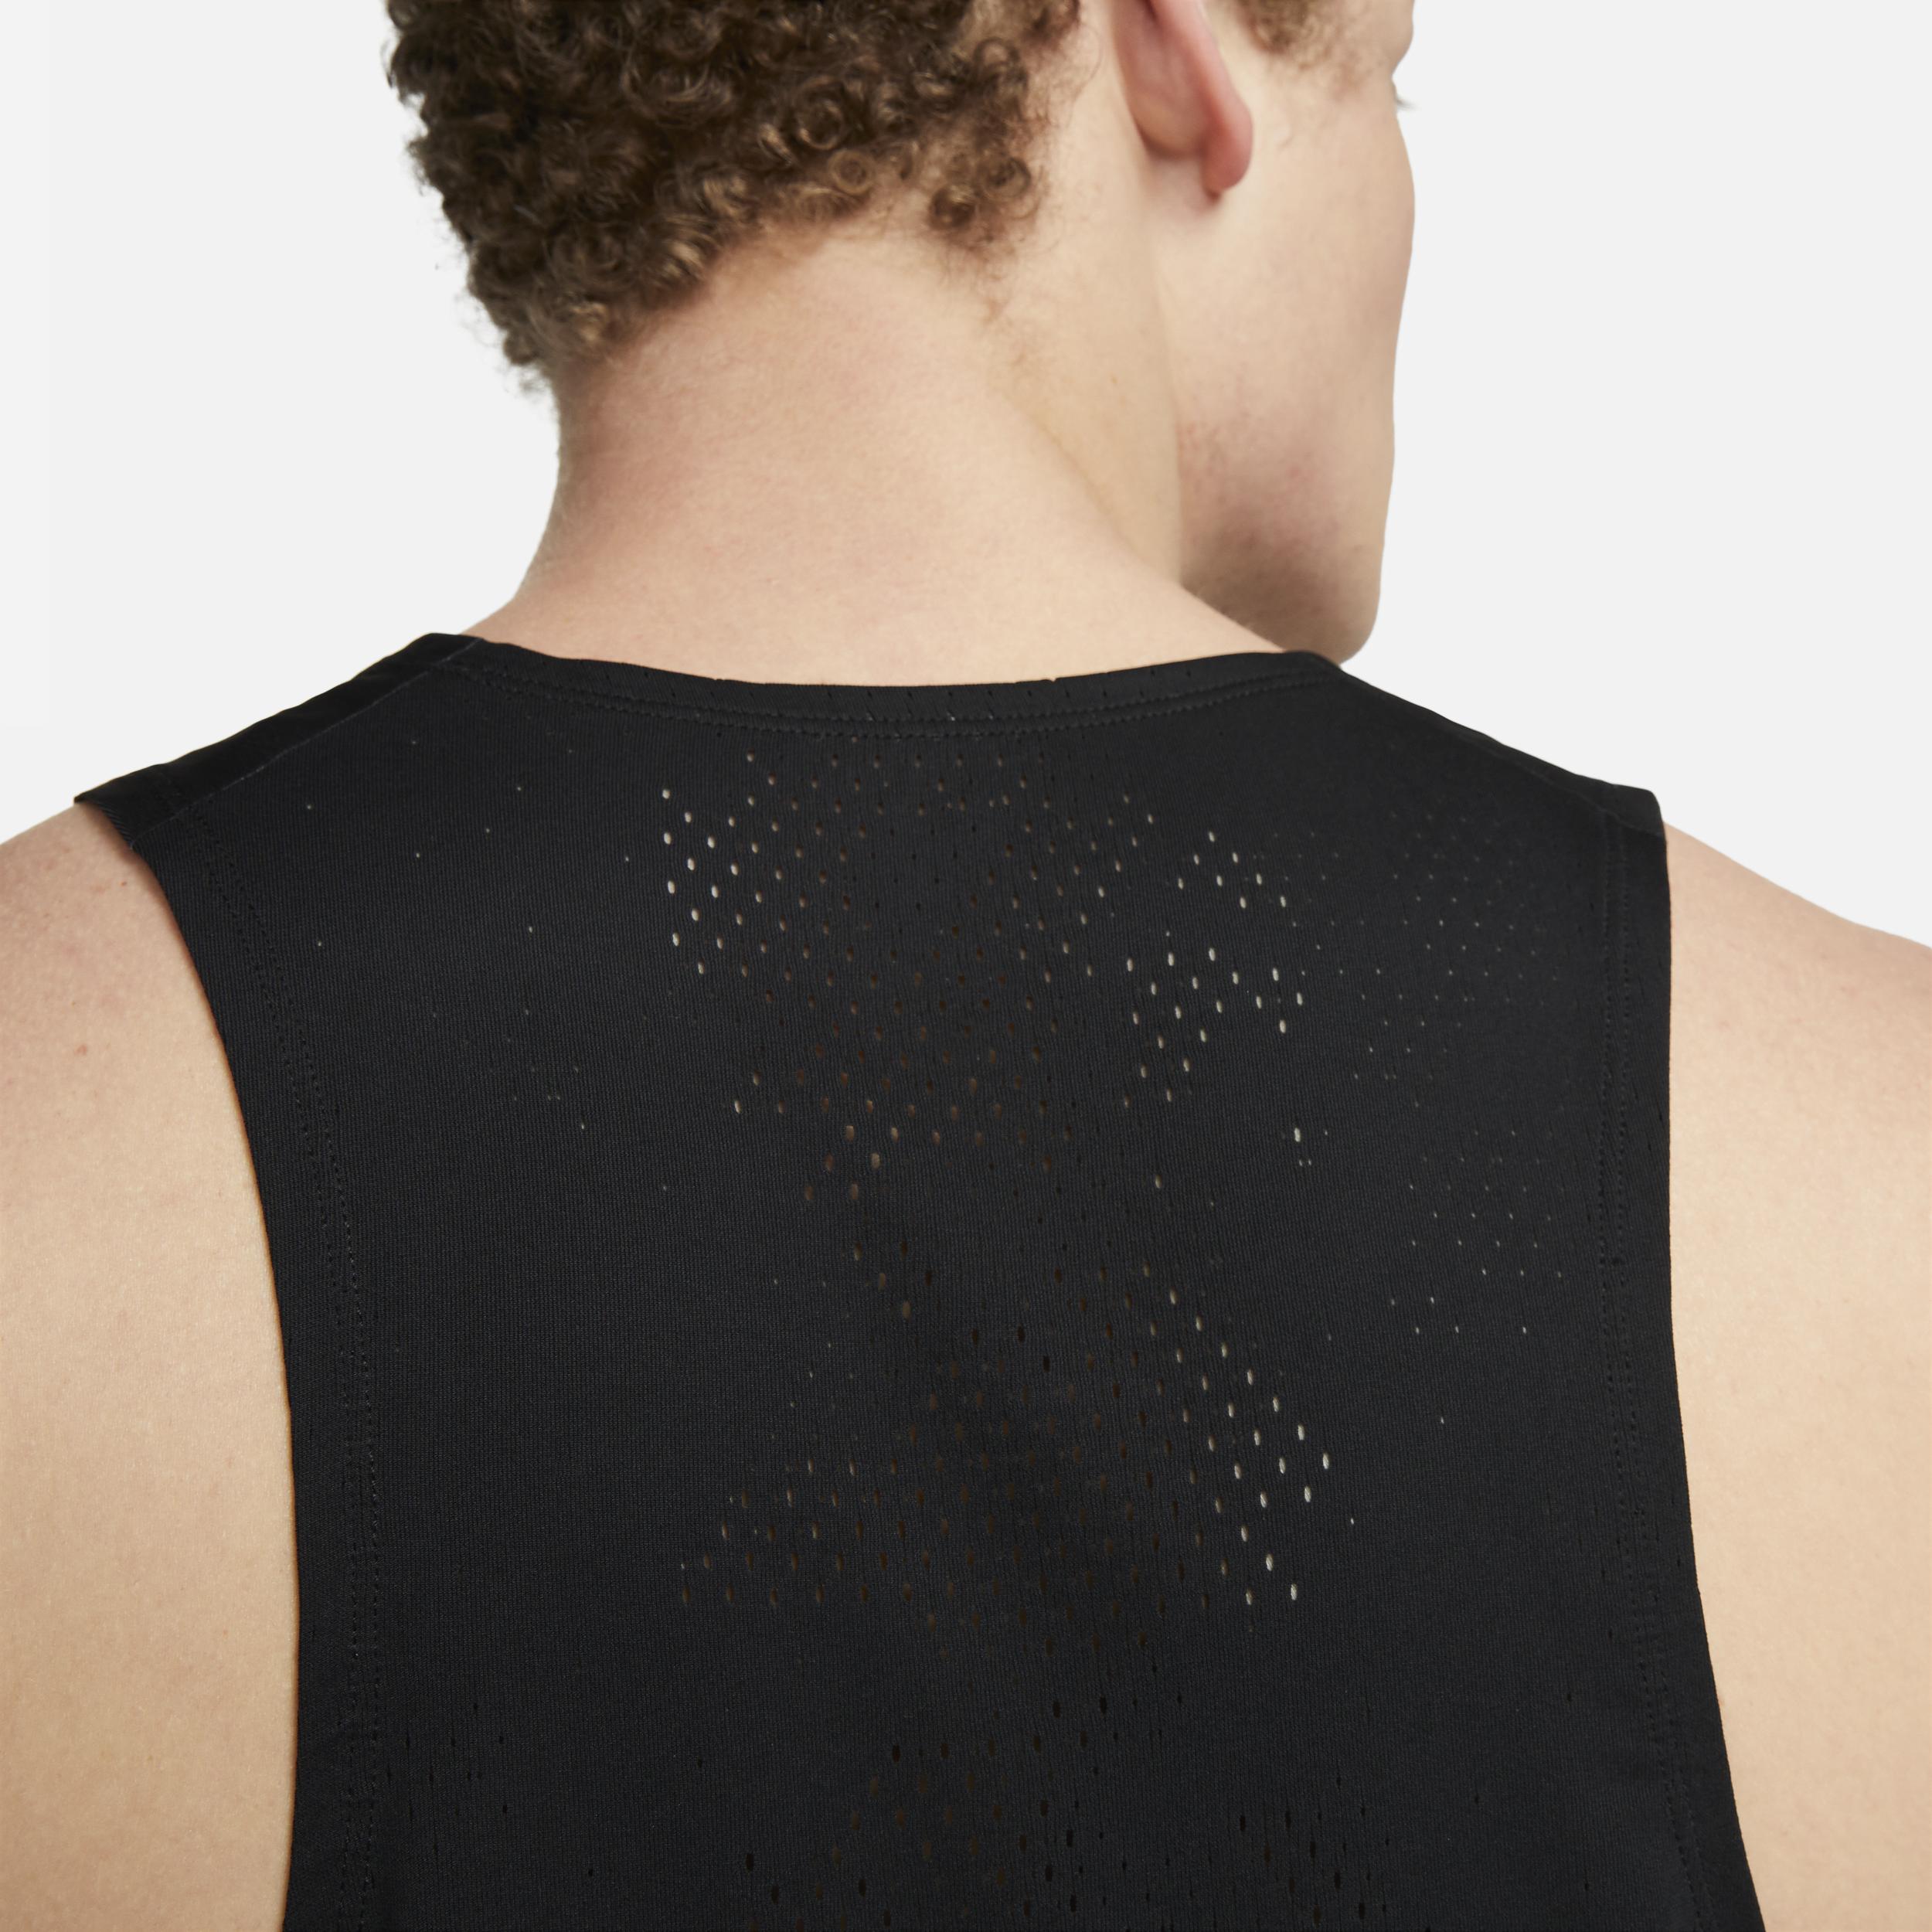 Nike Men's Dri-Fit ADV Techknit Ultra Tank Top, XL, Black